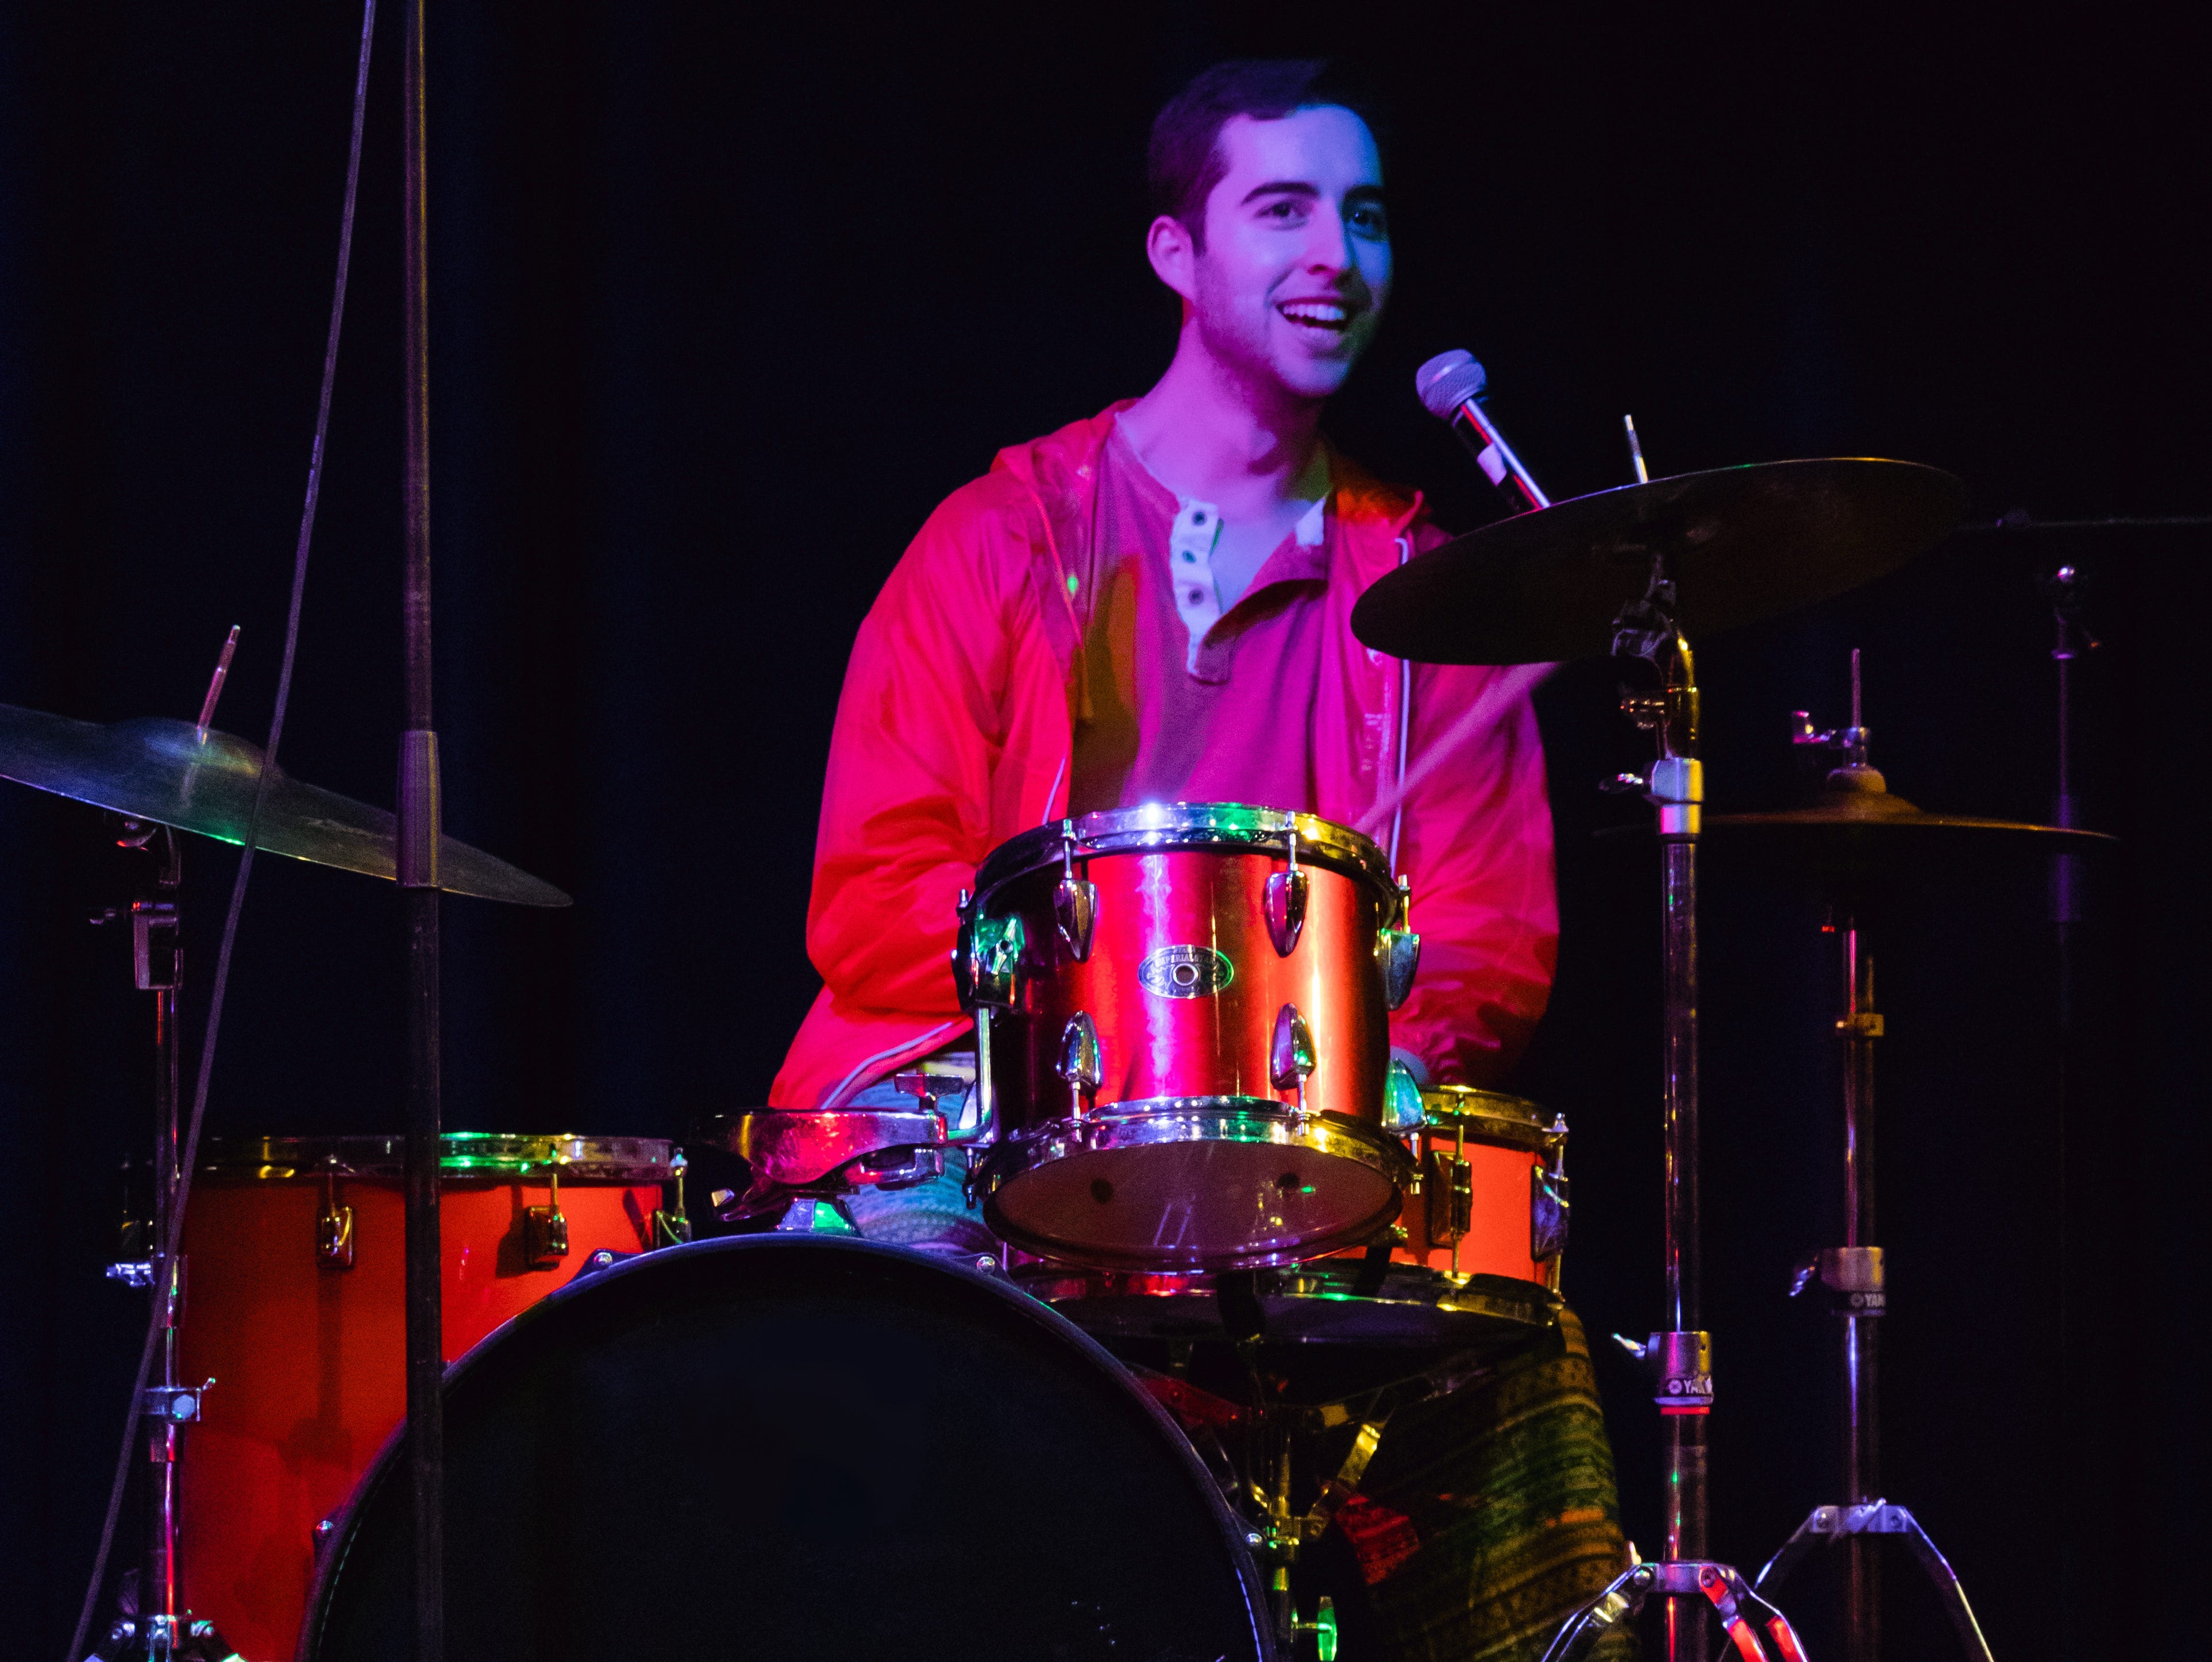 Ein Bild von Josh an seinem Schlagzeug.